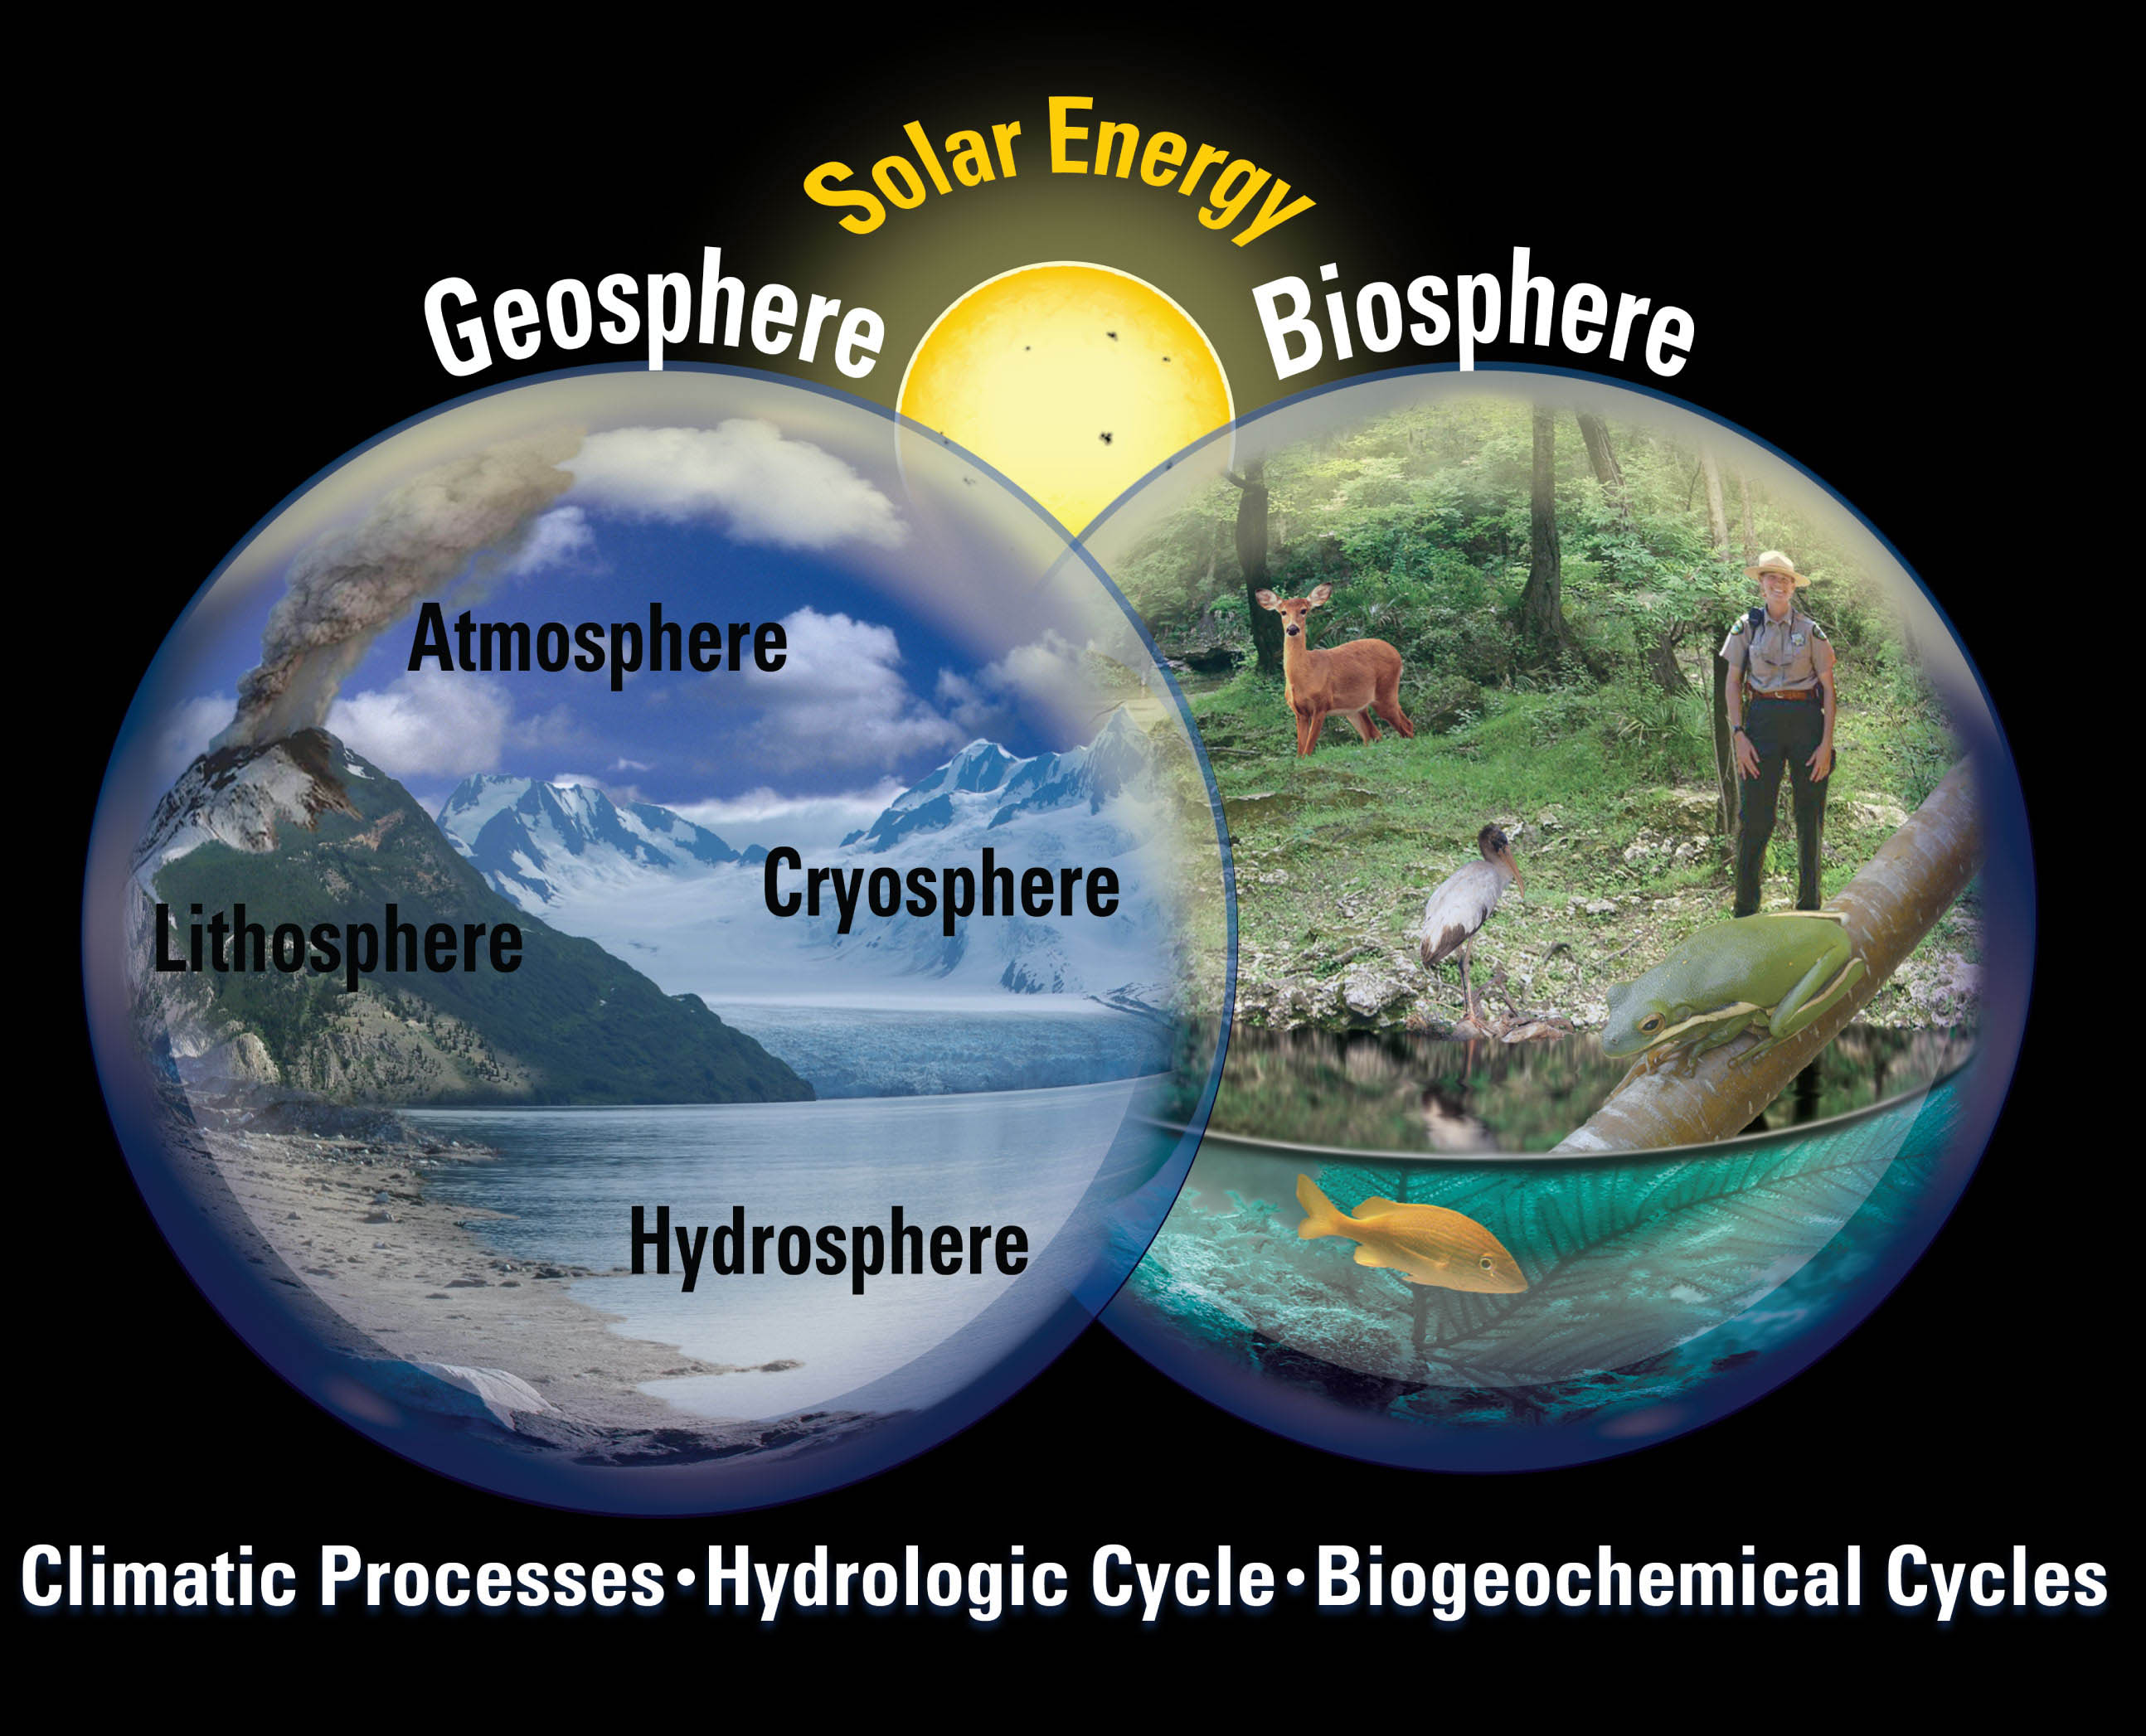 hydrosphere diagram